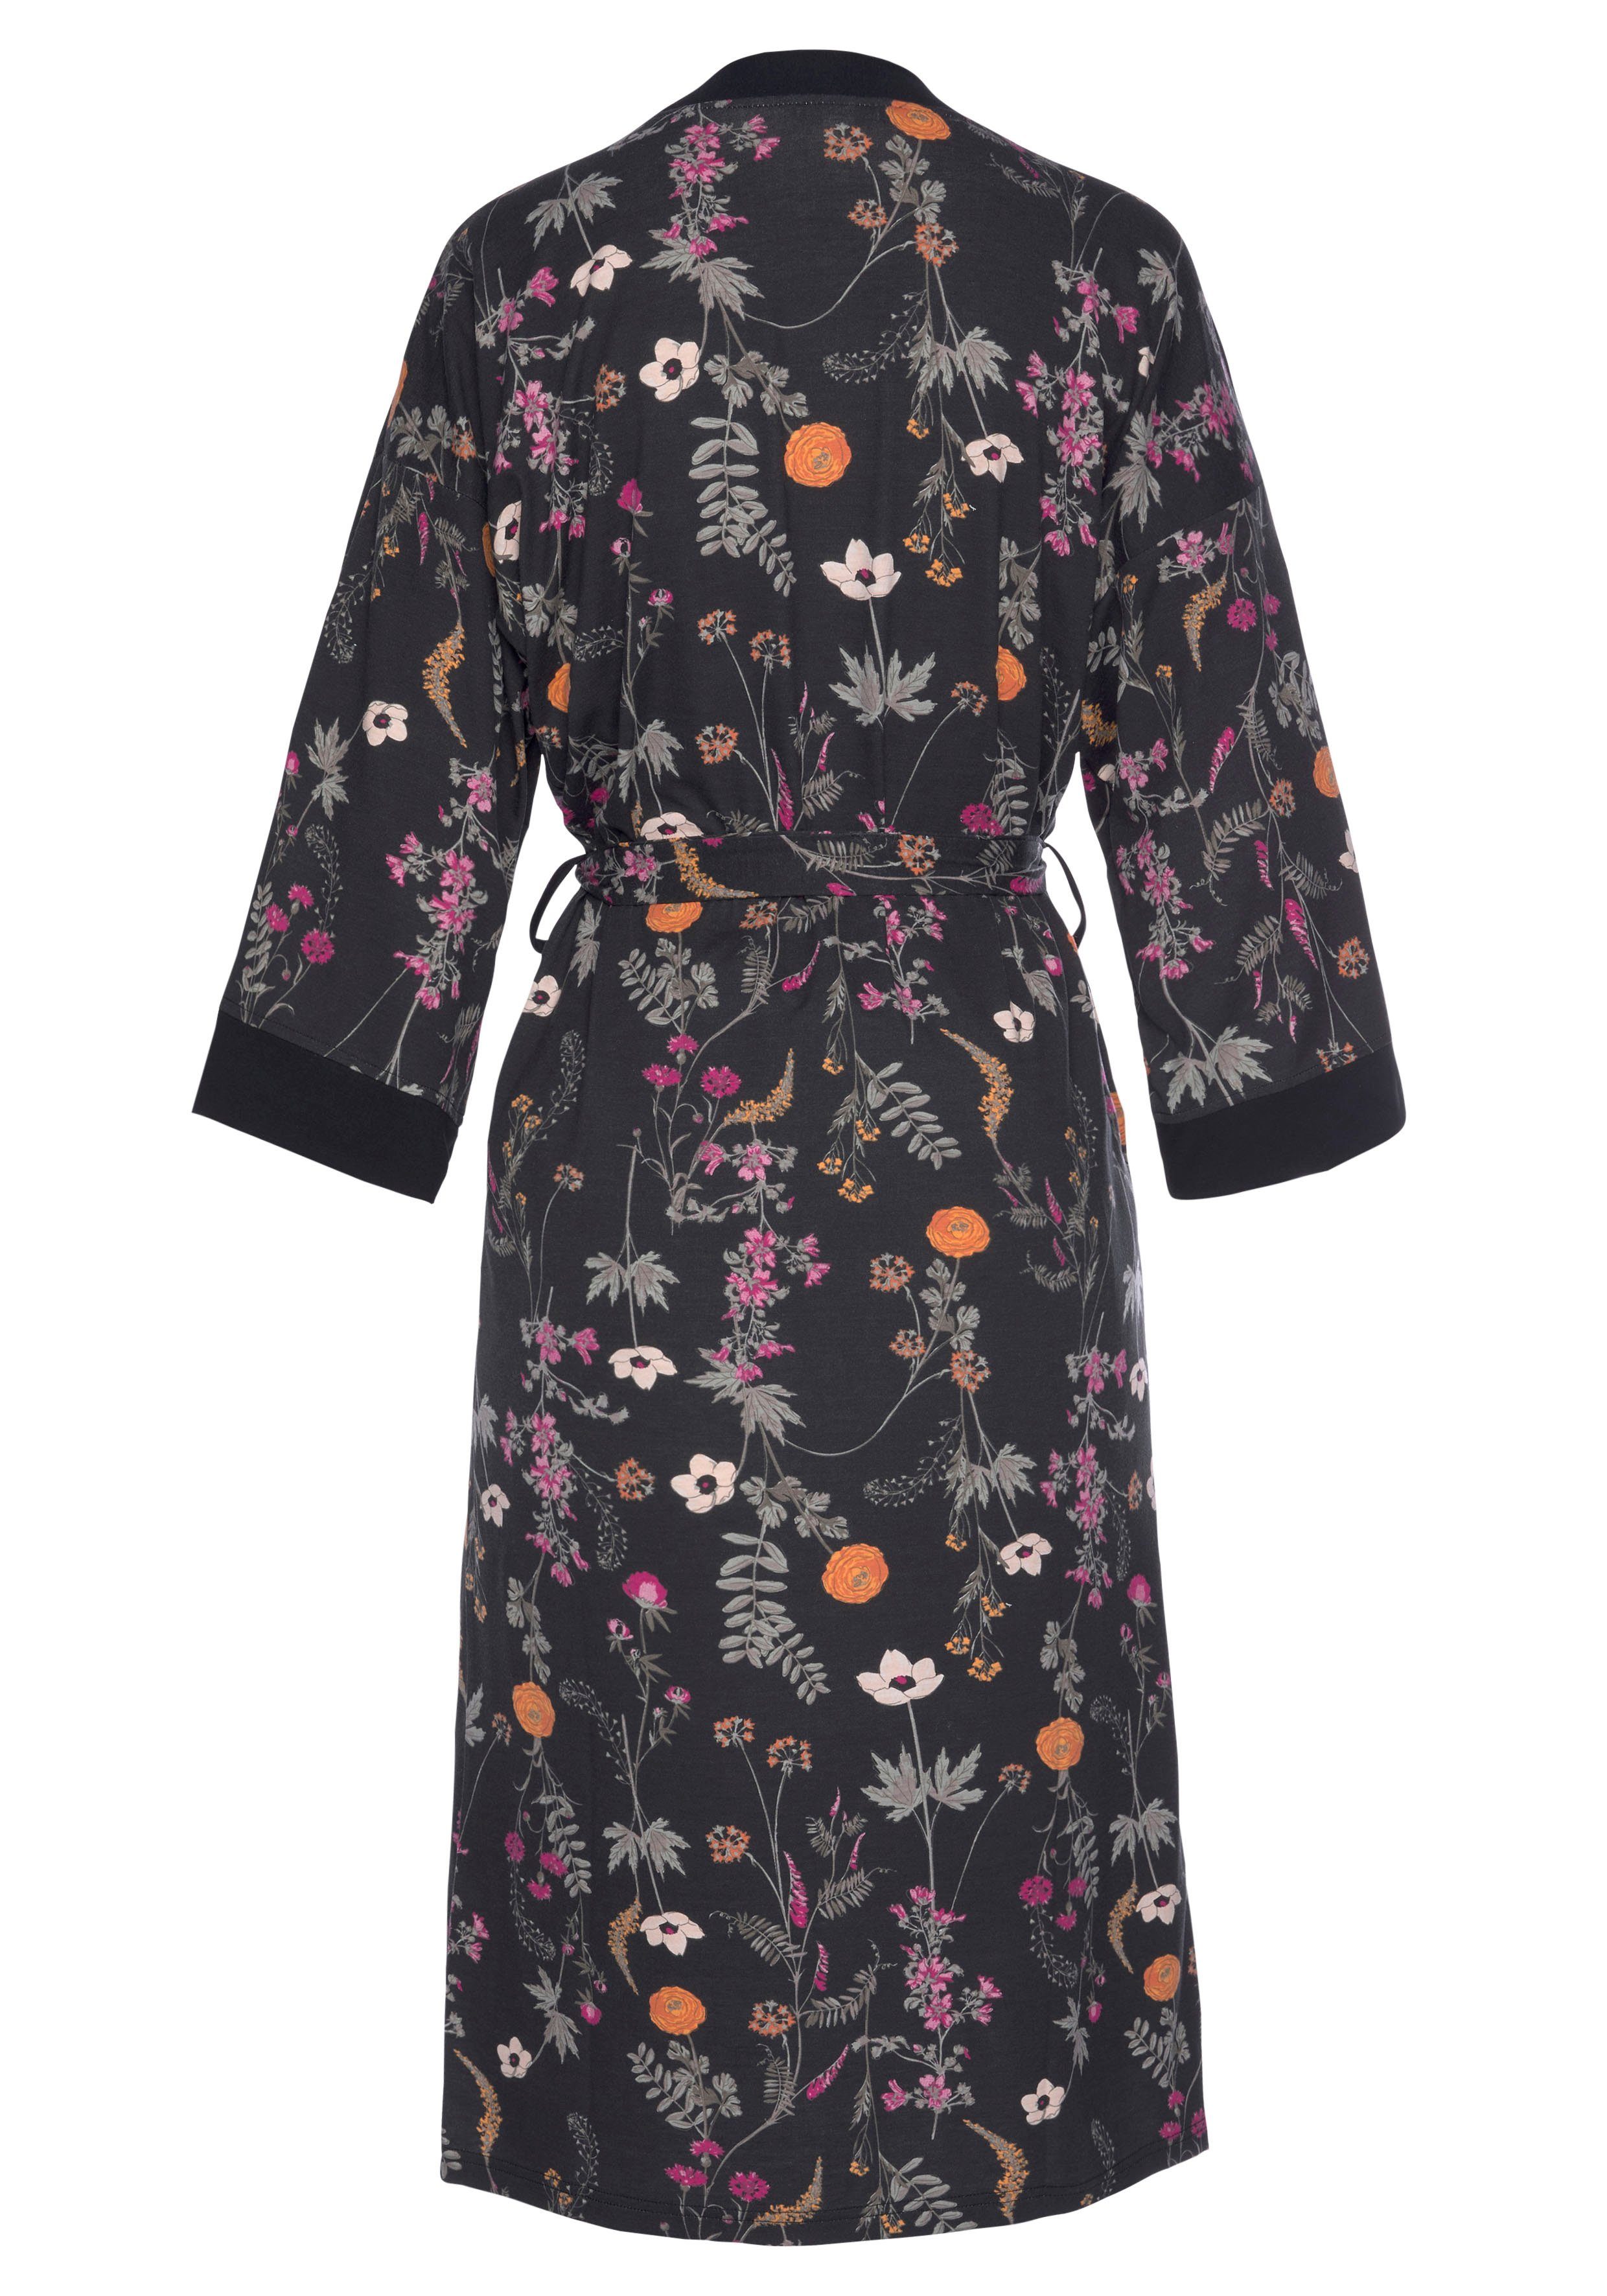 Wäsche/Bademode Loungewear Kimono, LASCANA, mit Wildblumen Muster